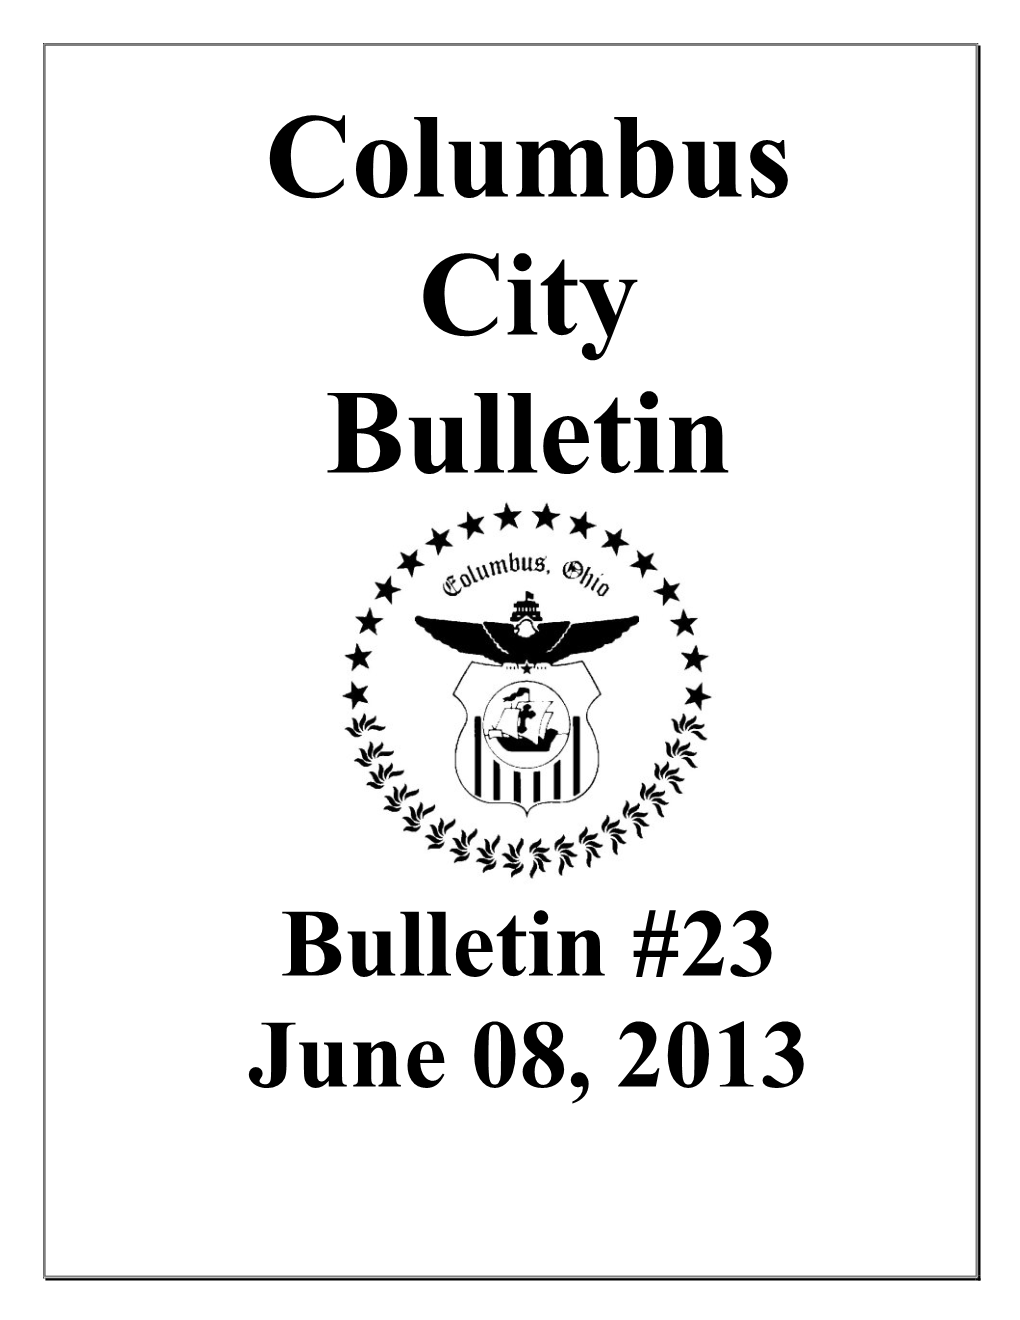 Bulletin #23 June 08, 2013